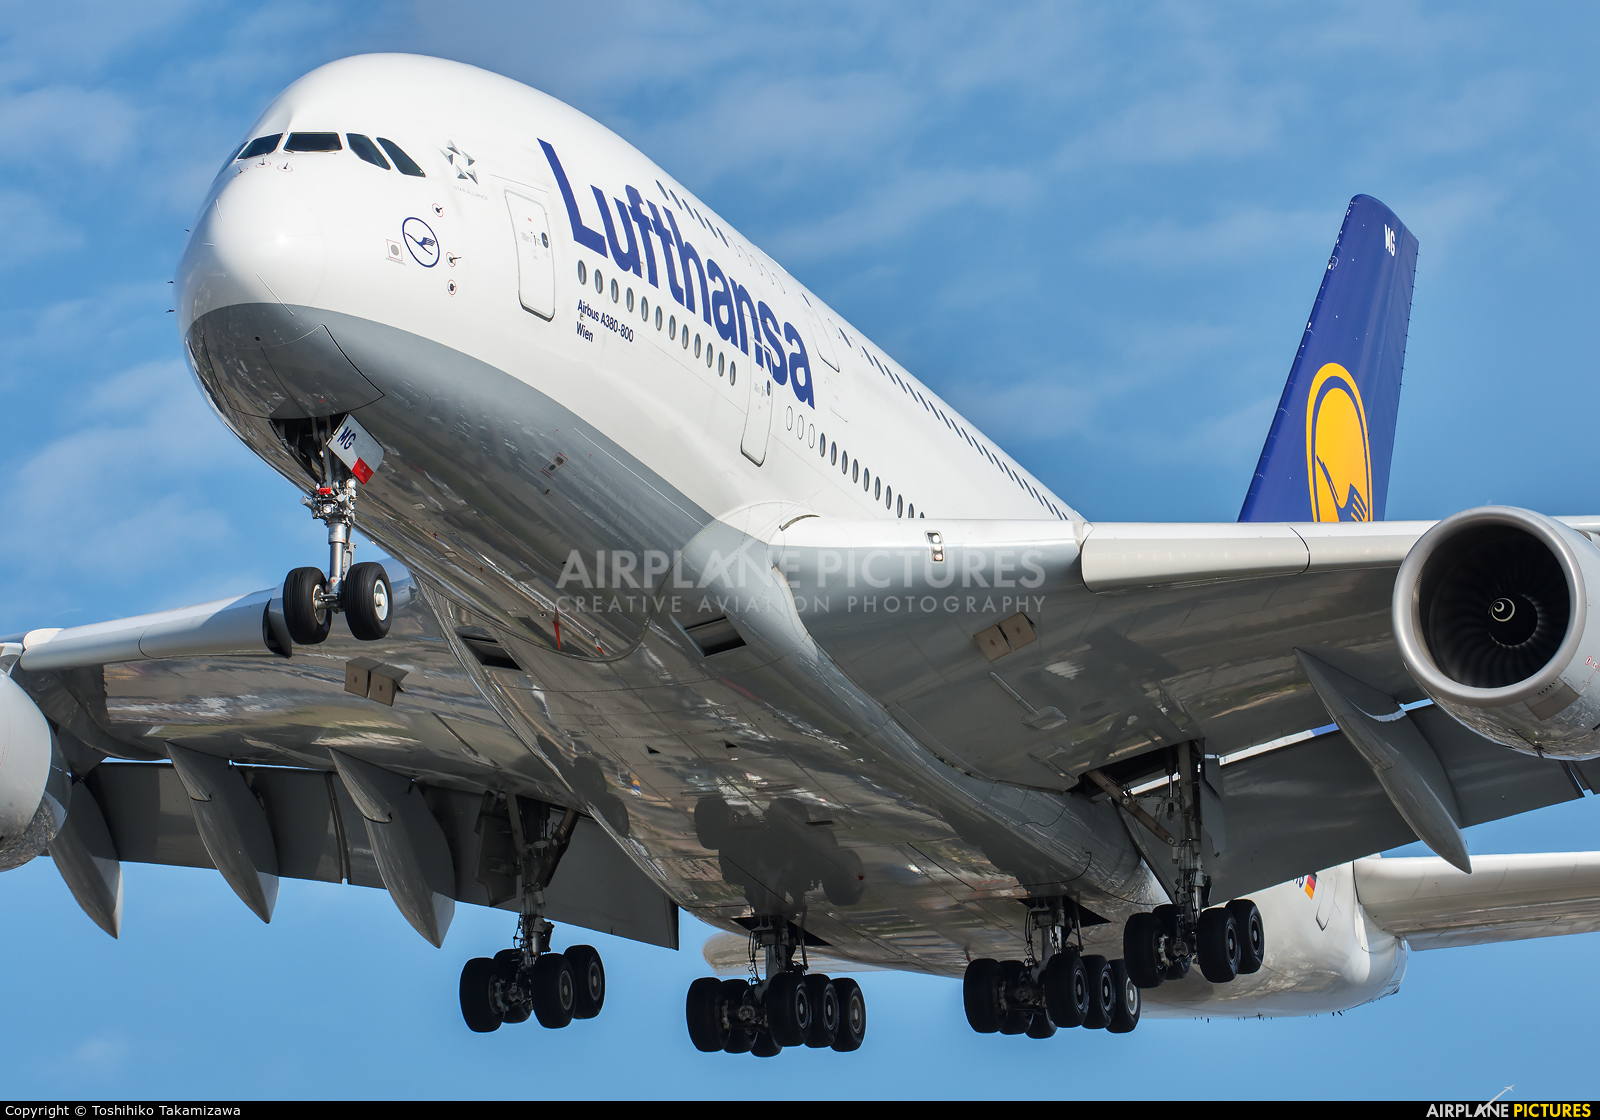 Lufthansa D-AIMG aircraft at Los Angeles Intl